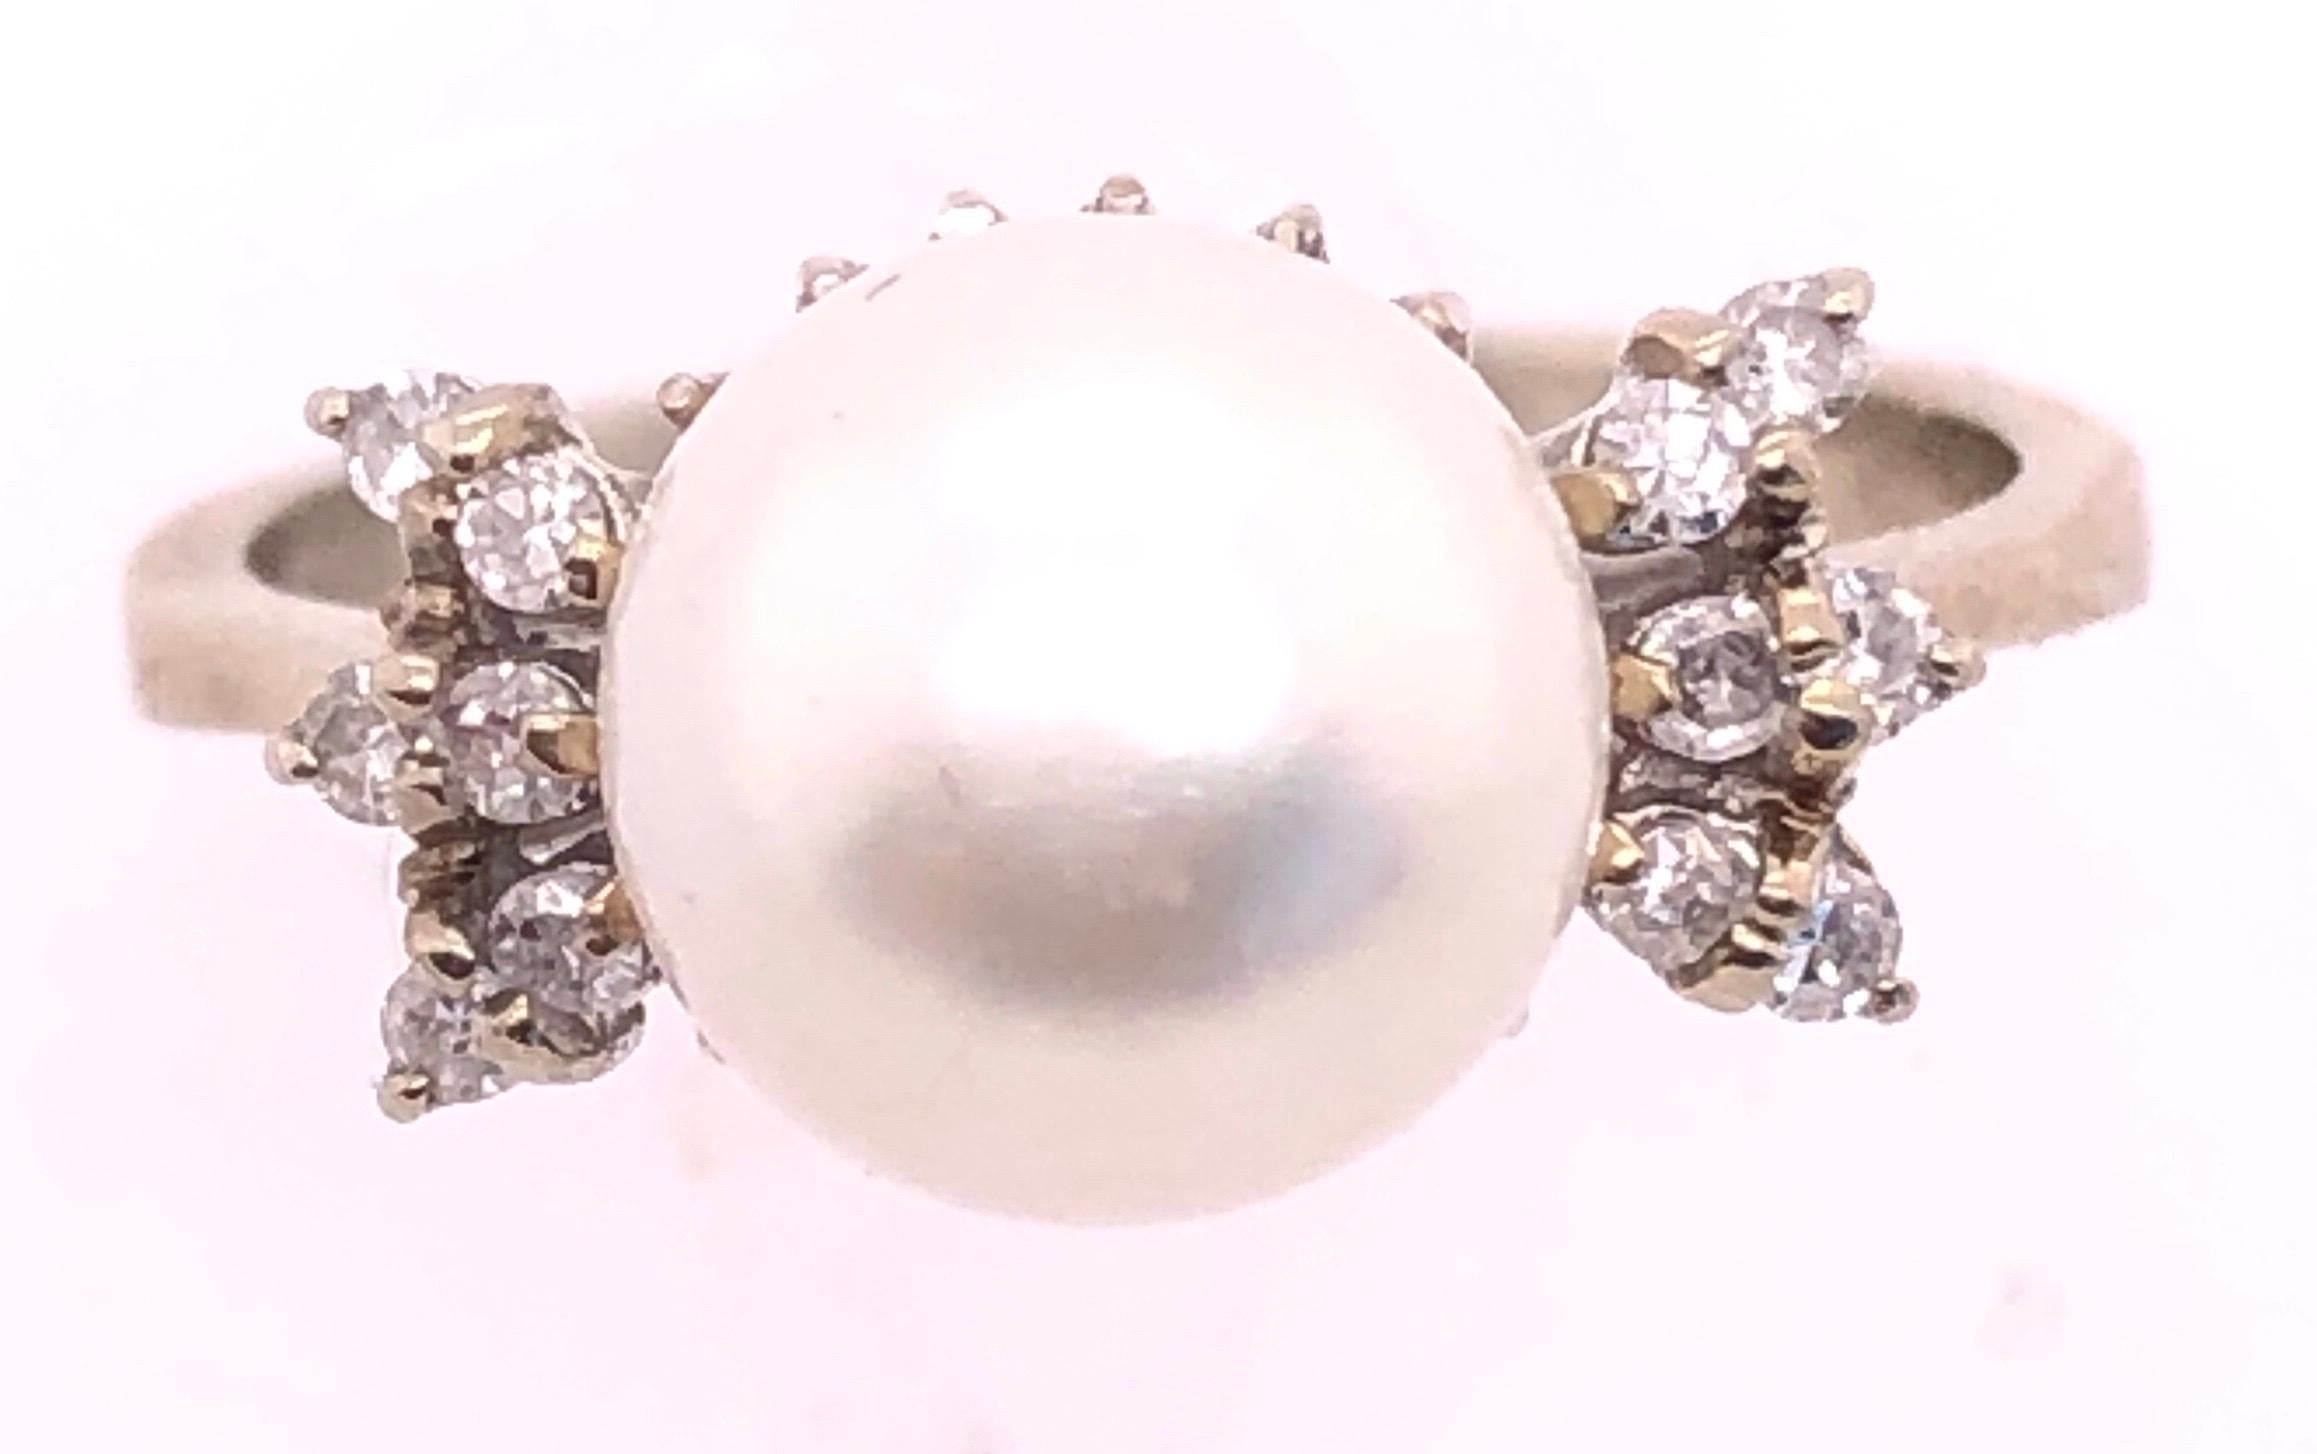 14 Karat Weißgold Perle Solitär mit Diamant-Akzenten Ring Größe 7.
0.12 Gesamtgewicht der Diamanten. 
zuchtperle mit 6 mm Durchmesser
4 Gramm Gesamtgewicht.